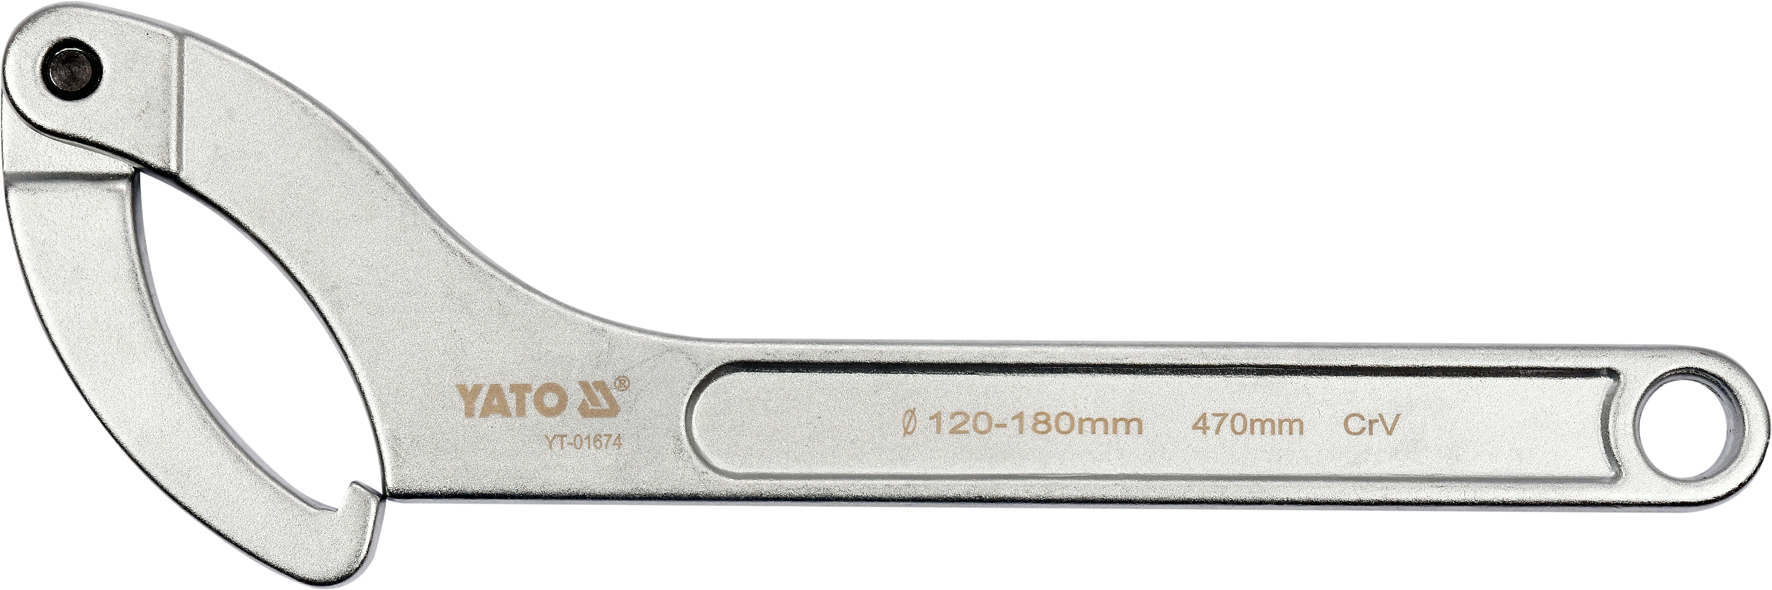 Hákový klíč, kloubový, 120 - 180 mm - YT-01674